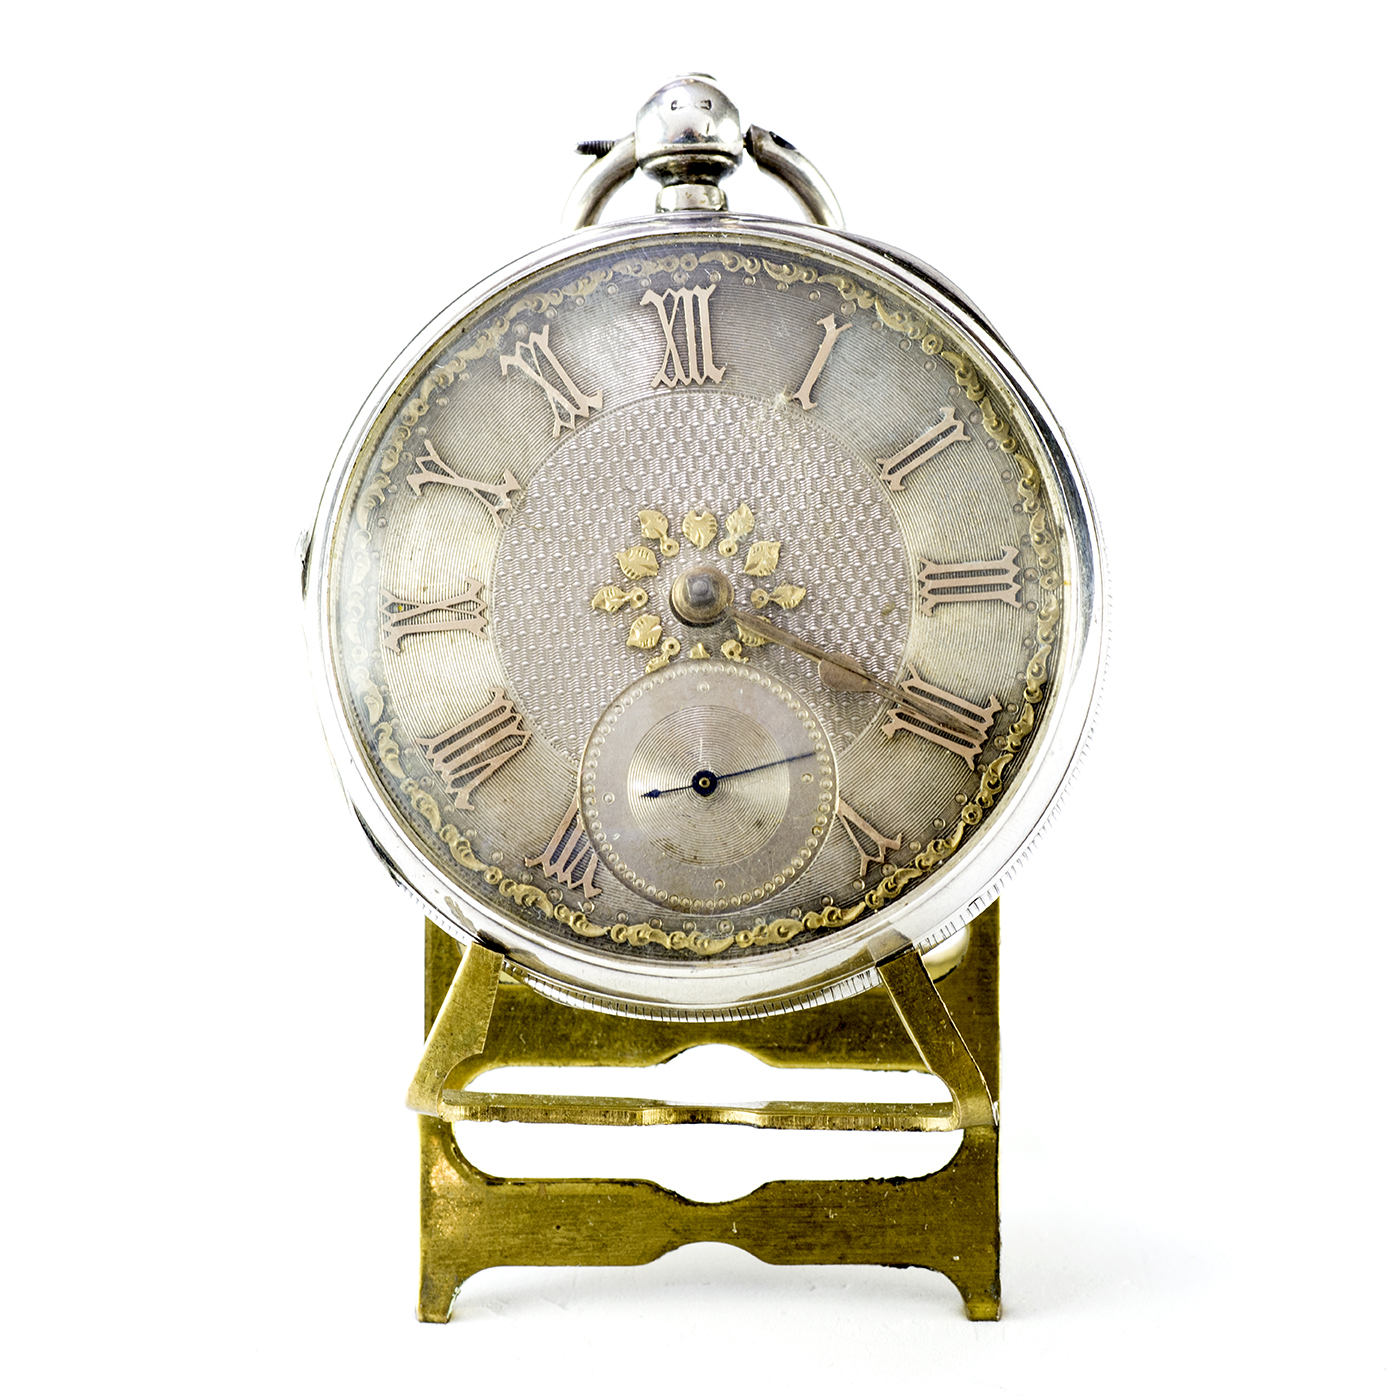 JAMES REID & Co. Reloj de bolsillo inglés, lepine, Half Fusee (Semicatalino). Londres, 1885.